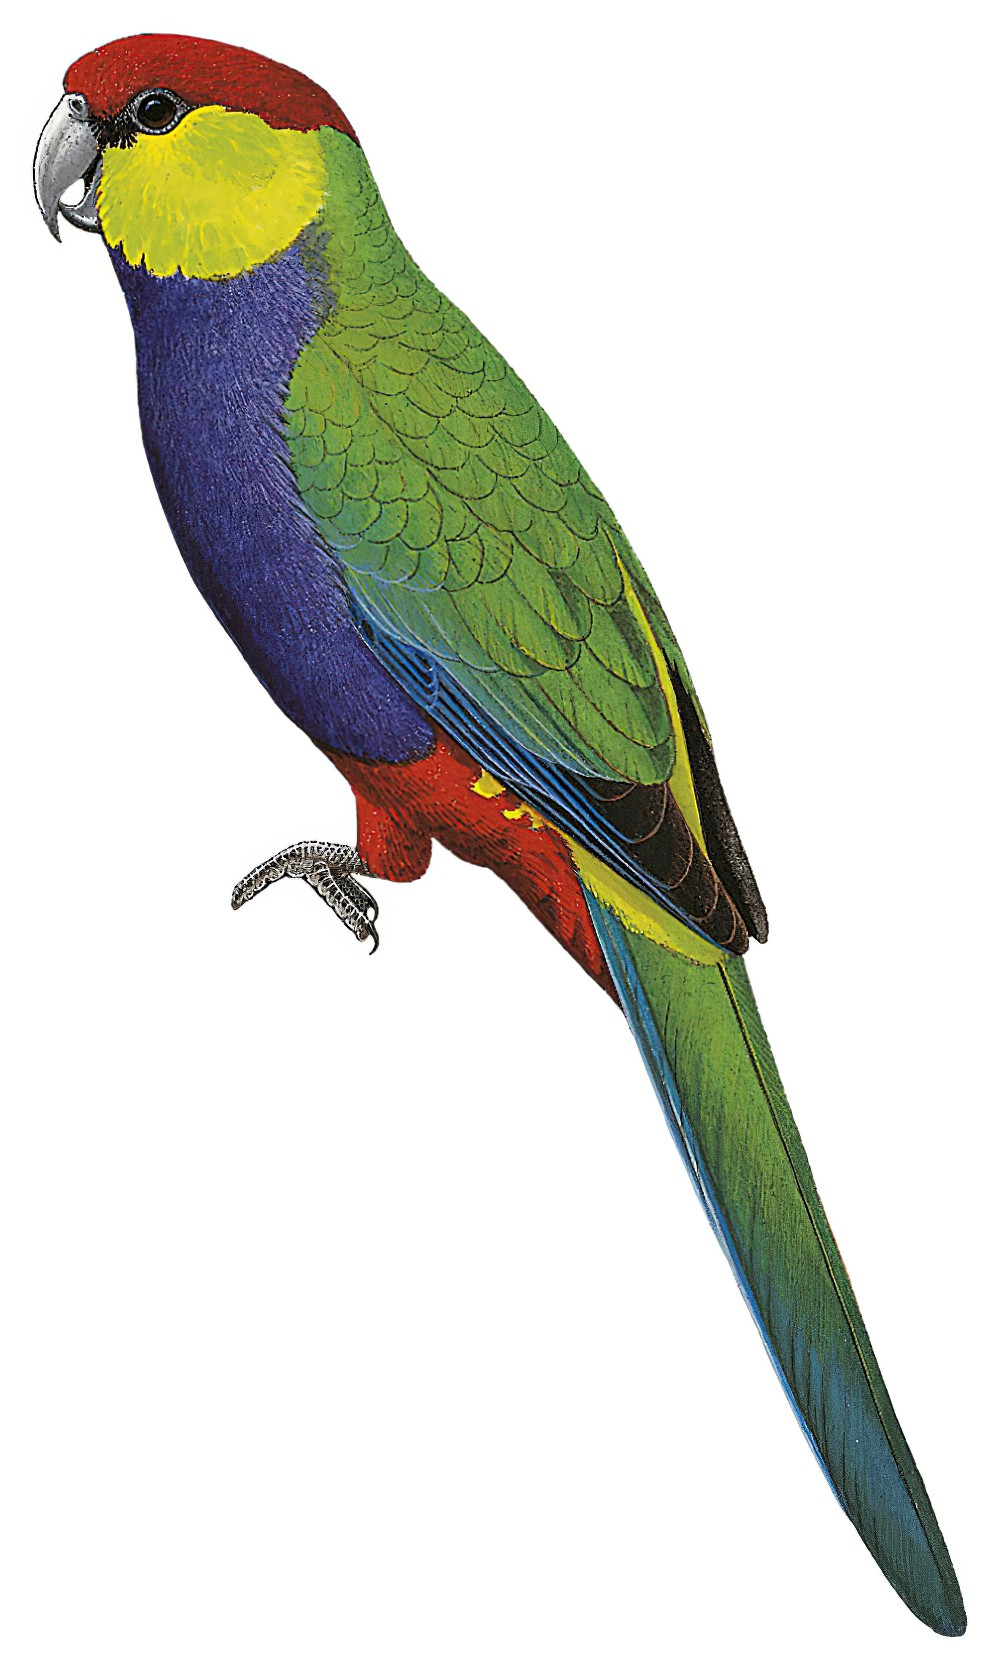 Red-capped Parrot / Purpureicephalus spurius